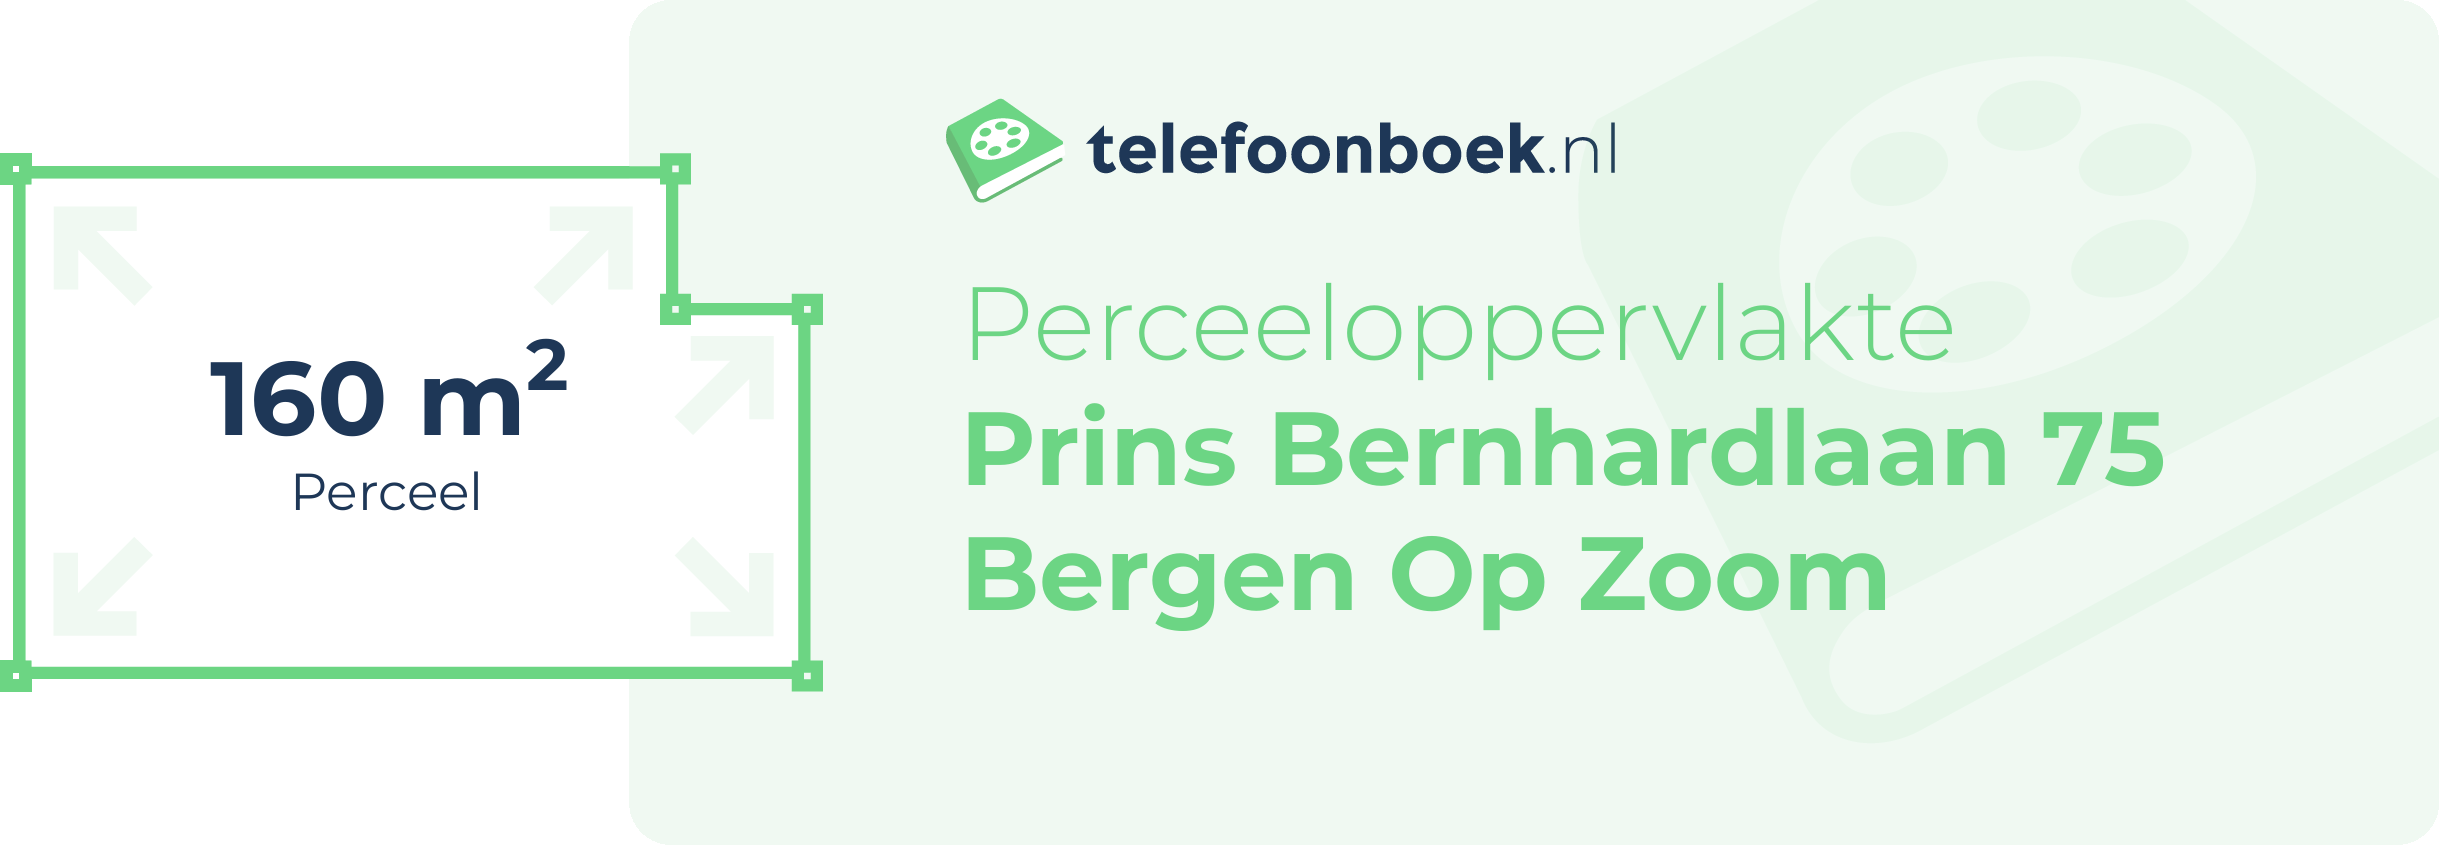 Perceeloppervlakte Prins Bernhardlaan 75 Bergen Op Zoom